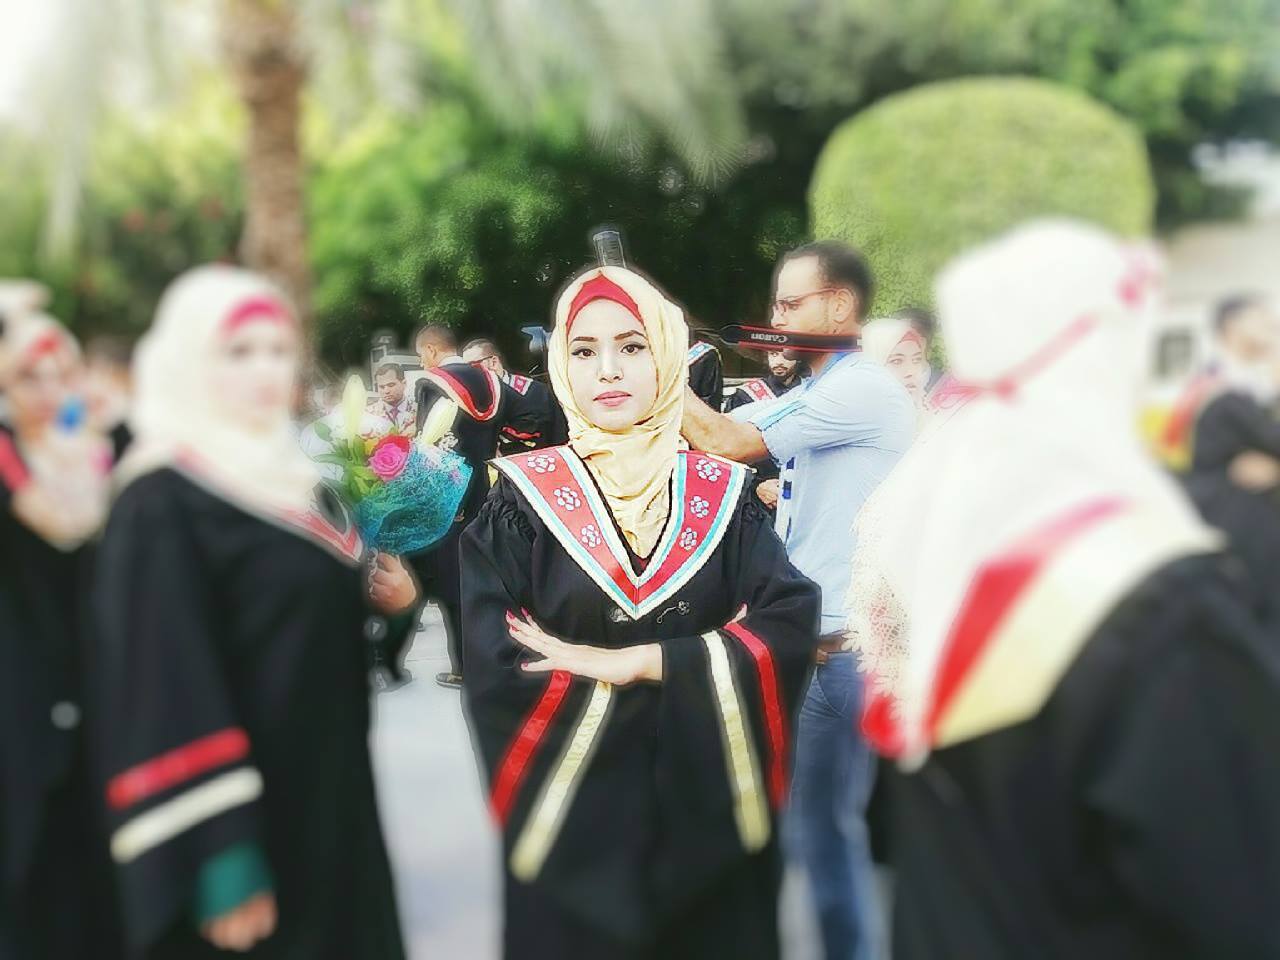 Basma at graduation